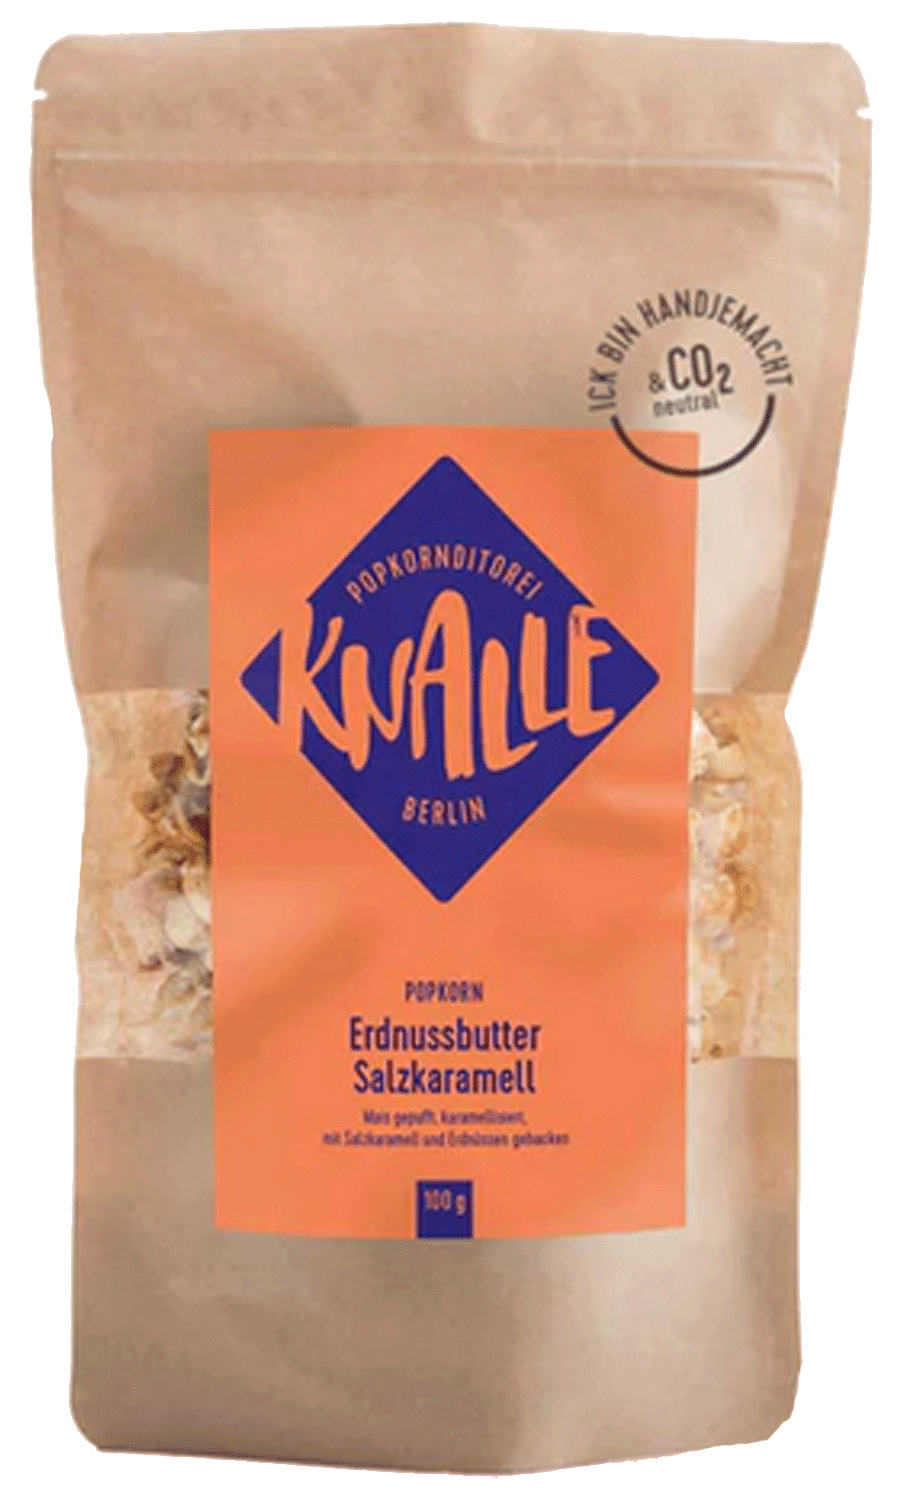 9x15-Knalle-Erdnussbutter-Karamel